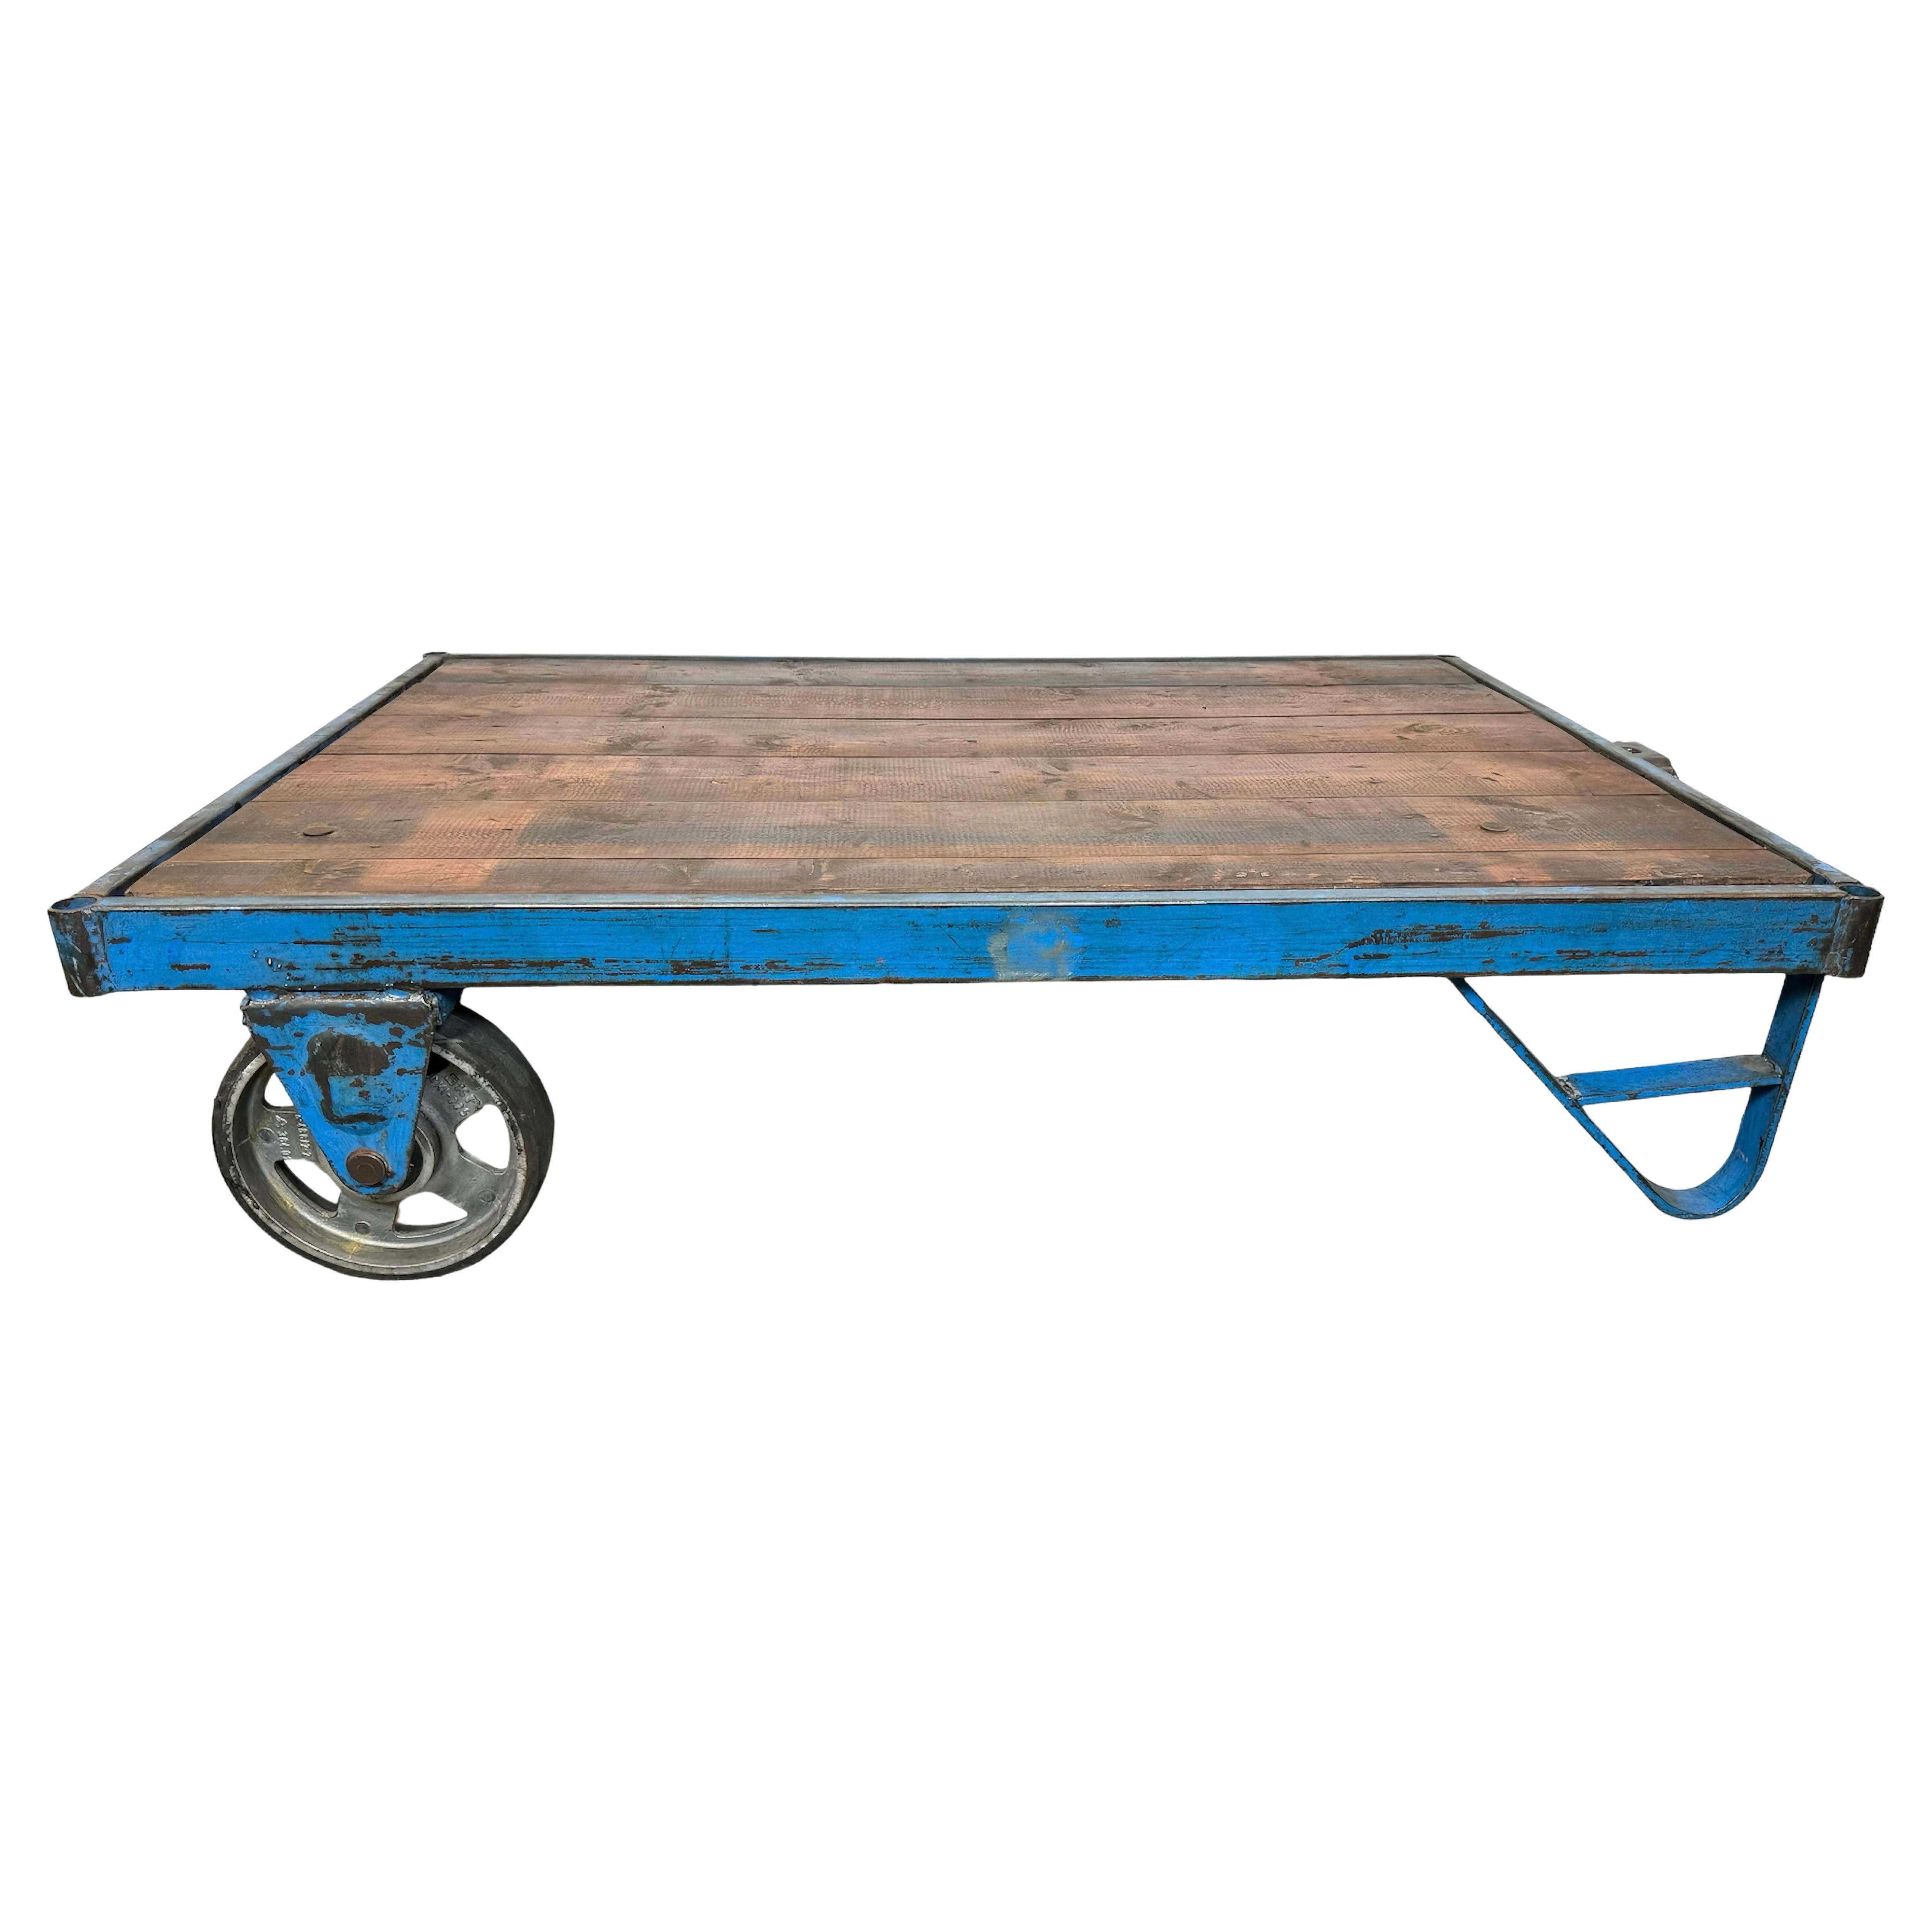 Grand chariot de table basse industriel bleu, années 1960